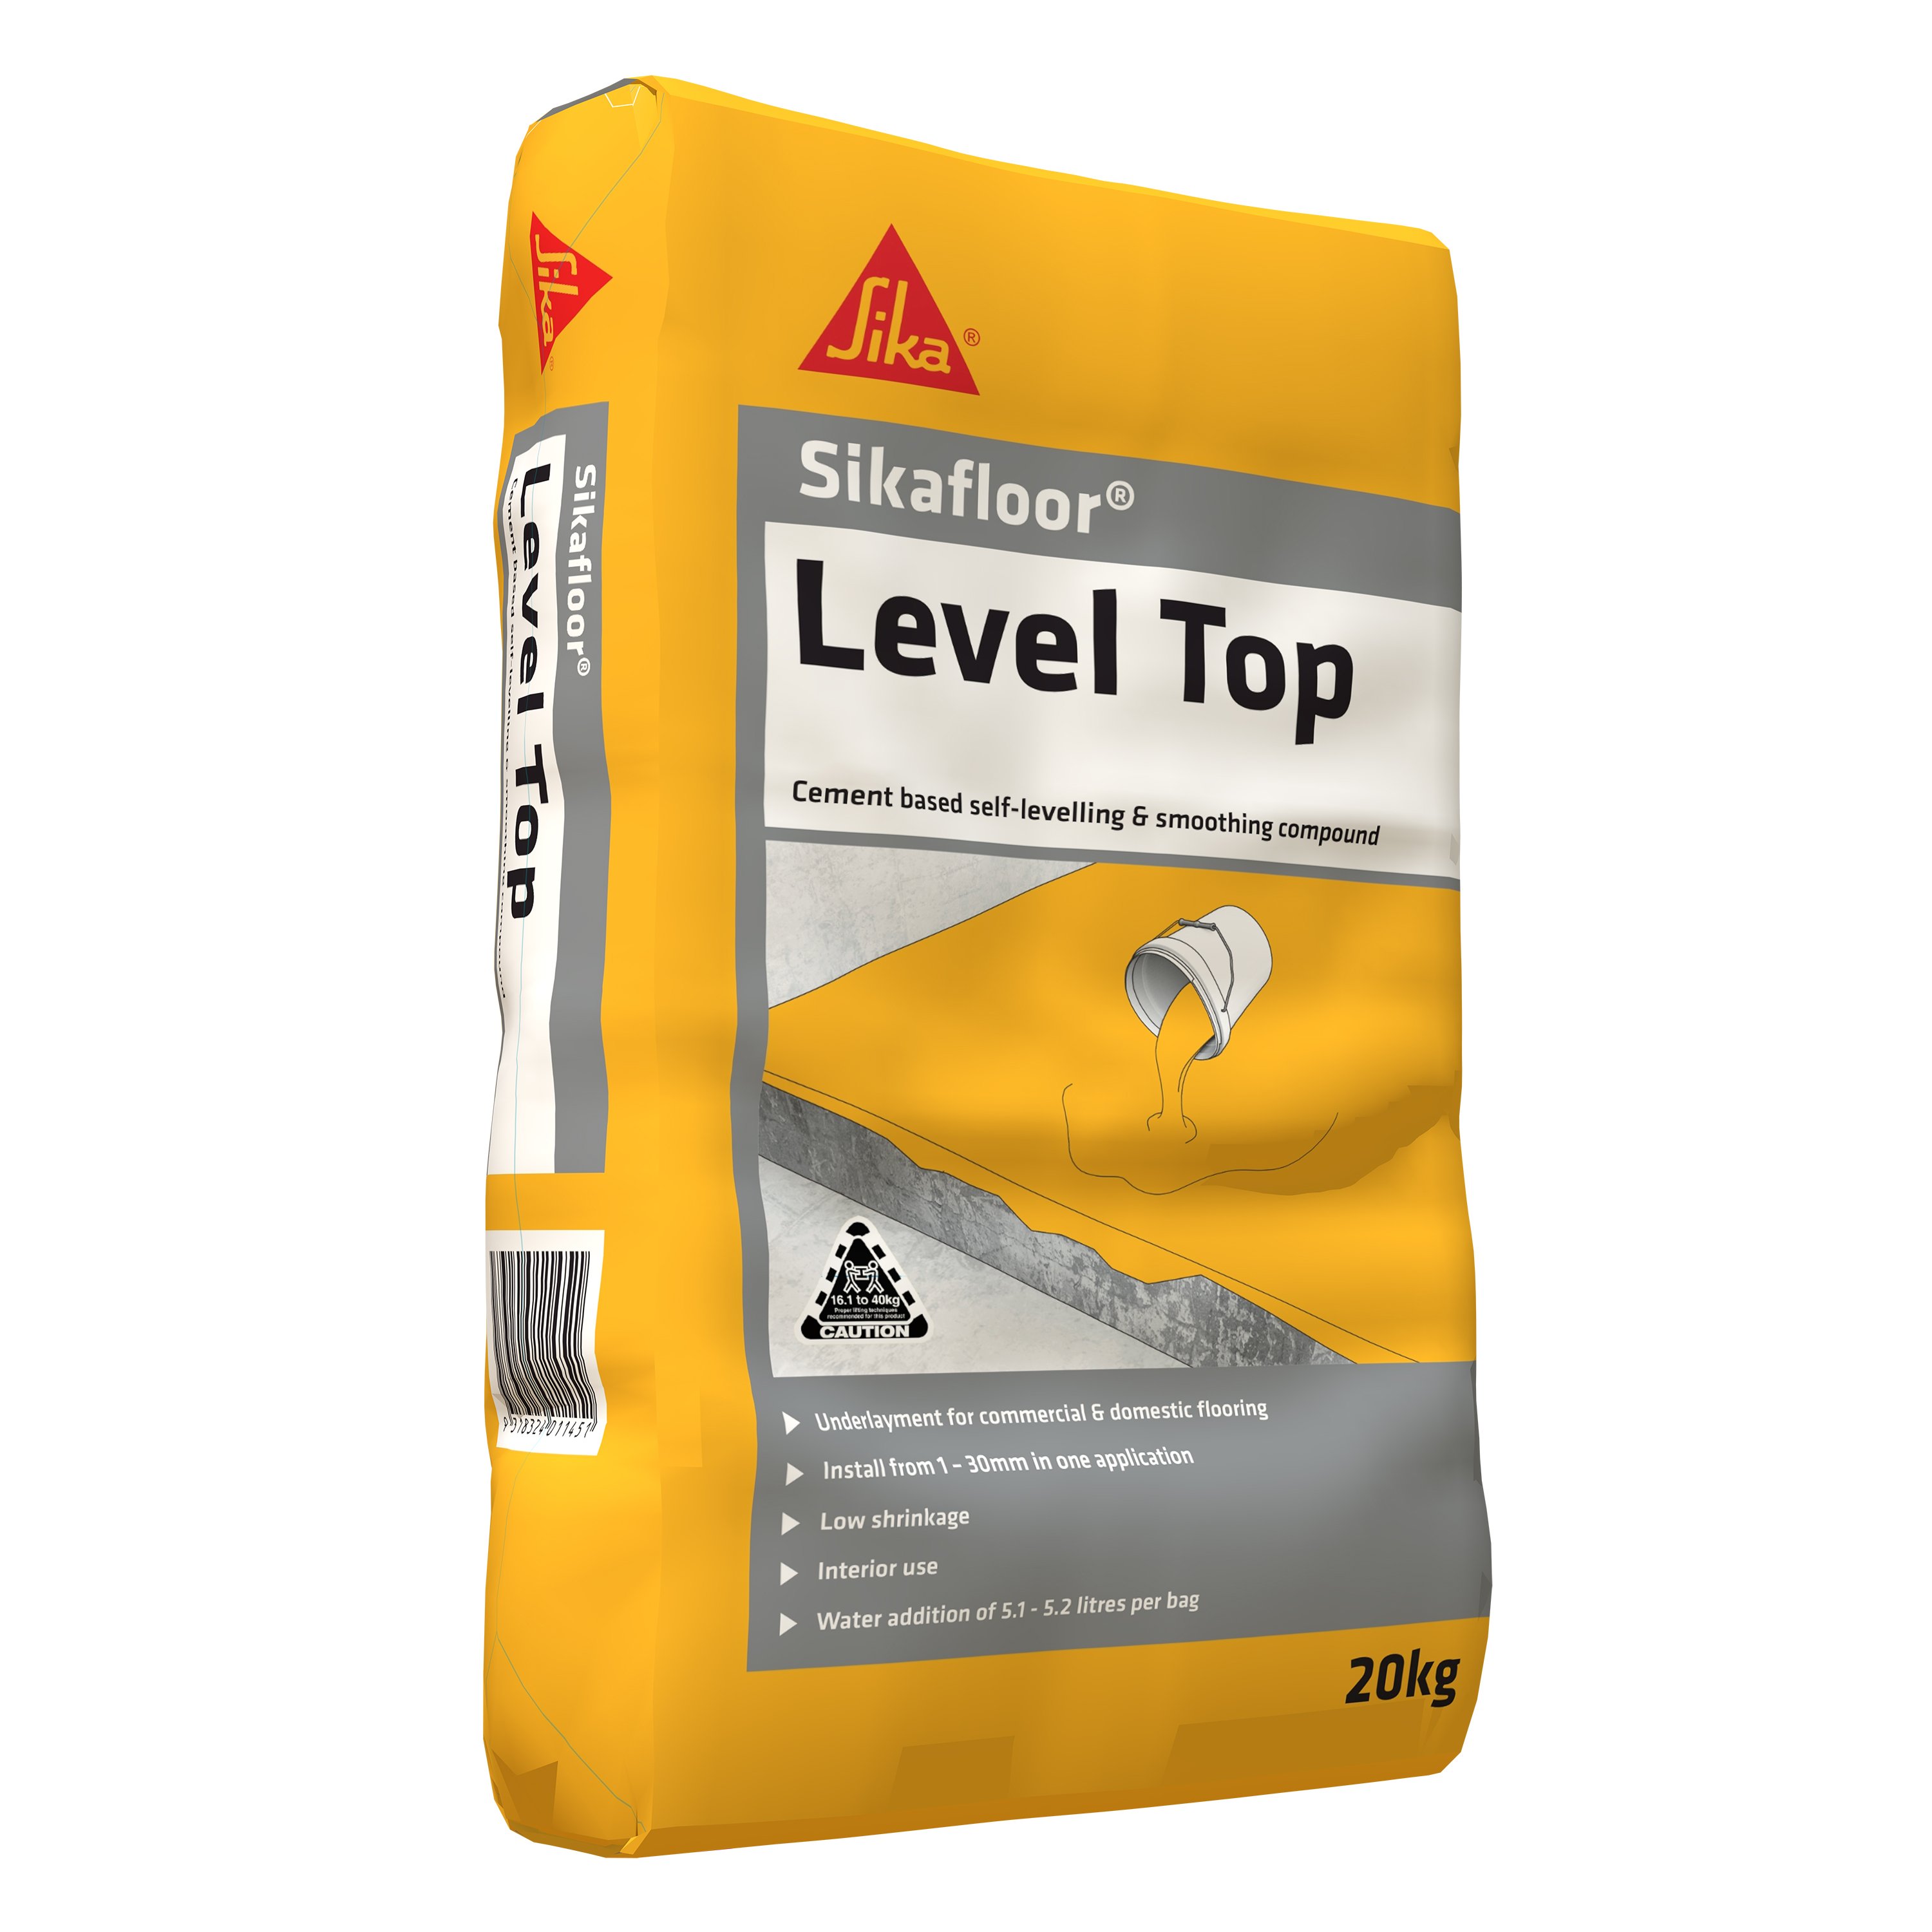 Level Top